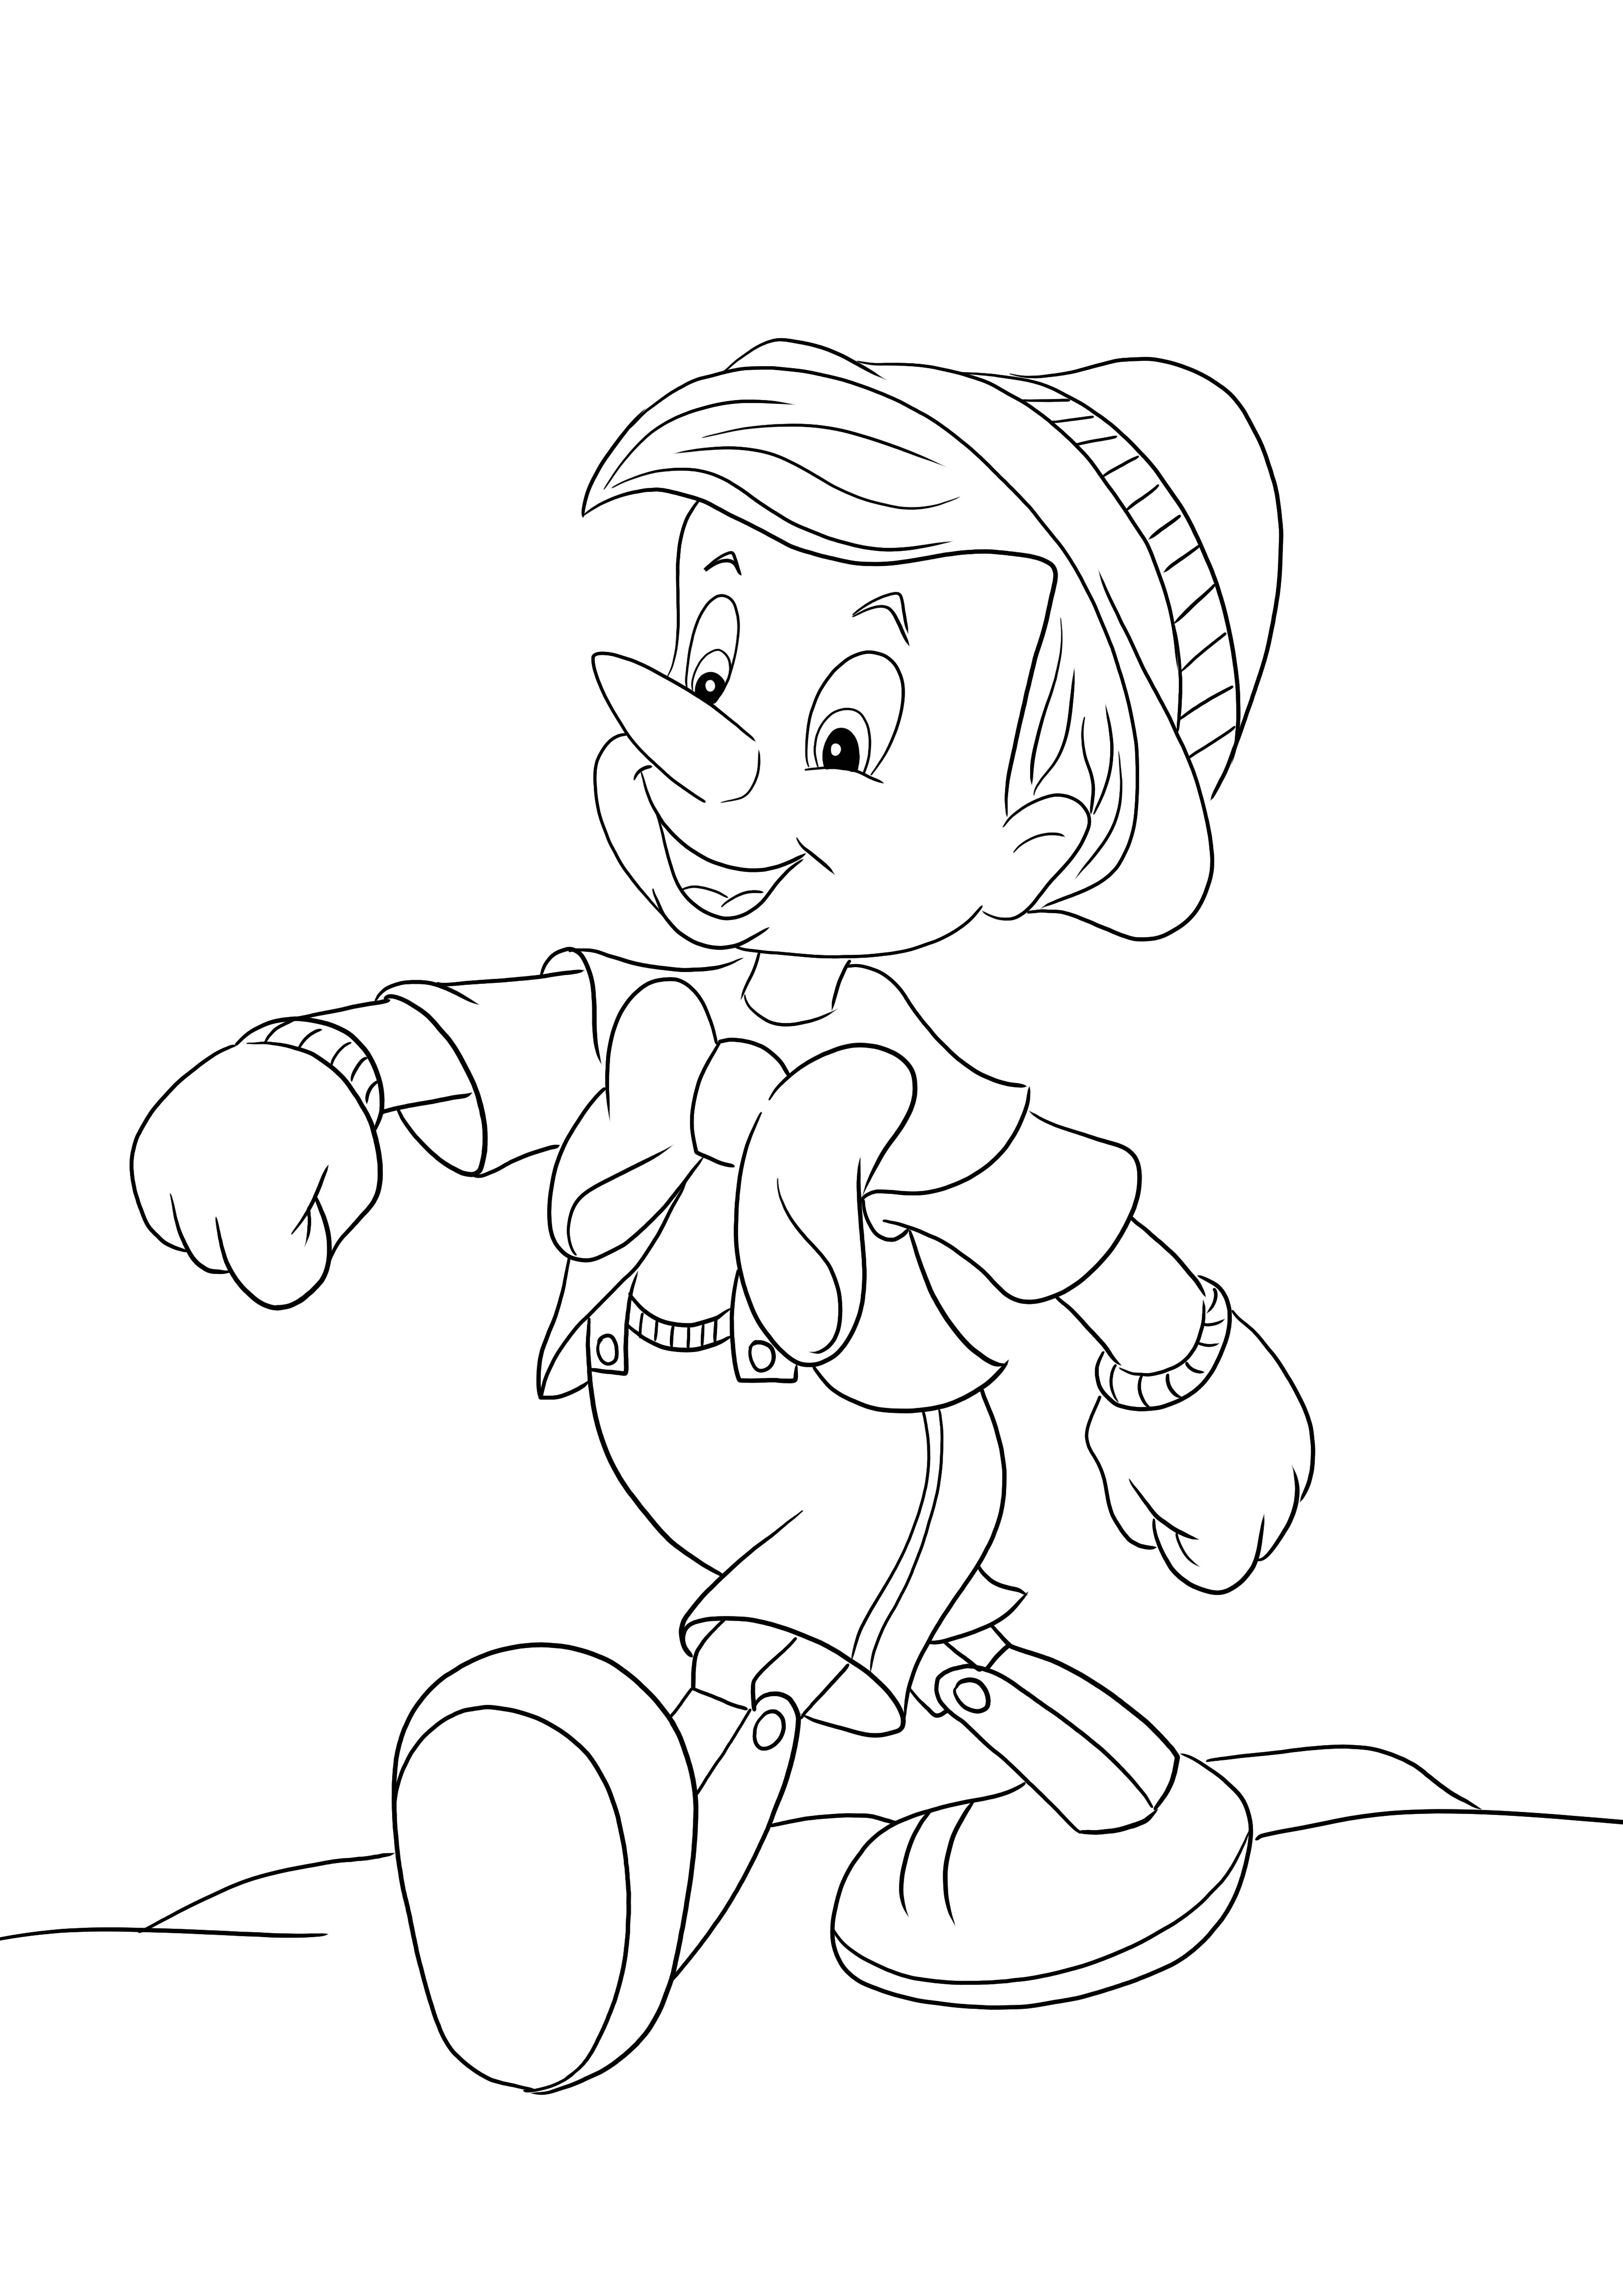 Pinocchio berjalan dengan bangga mewarnai halaman-siap diunduh dan diwarnai